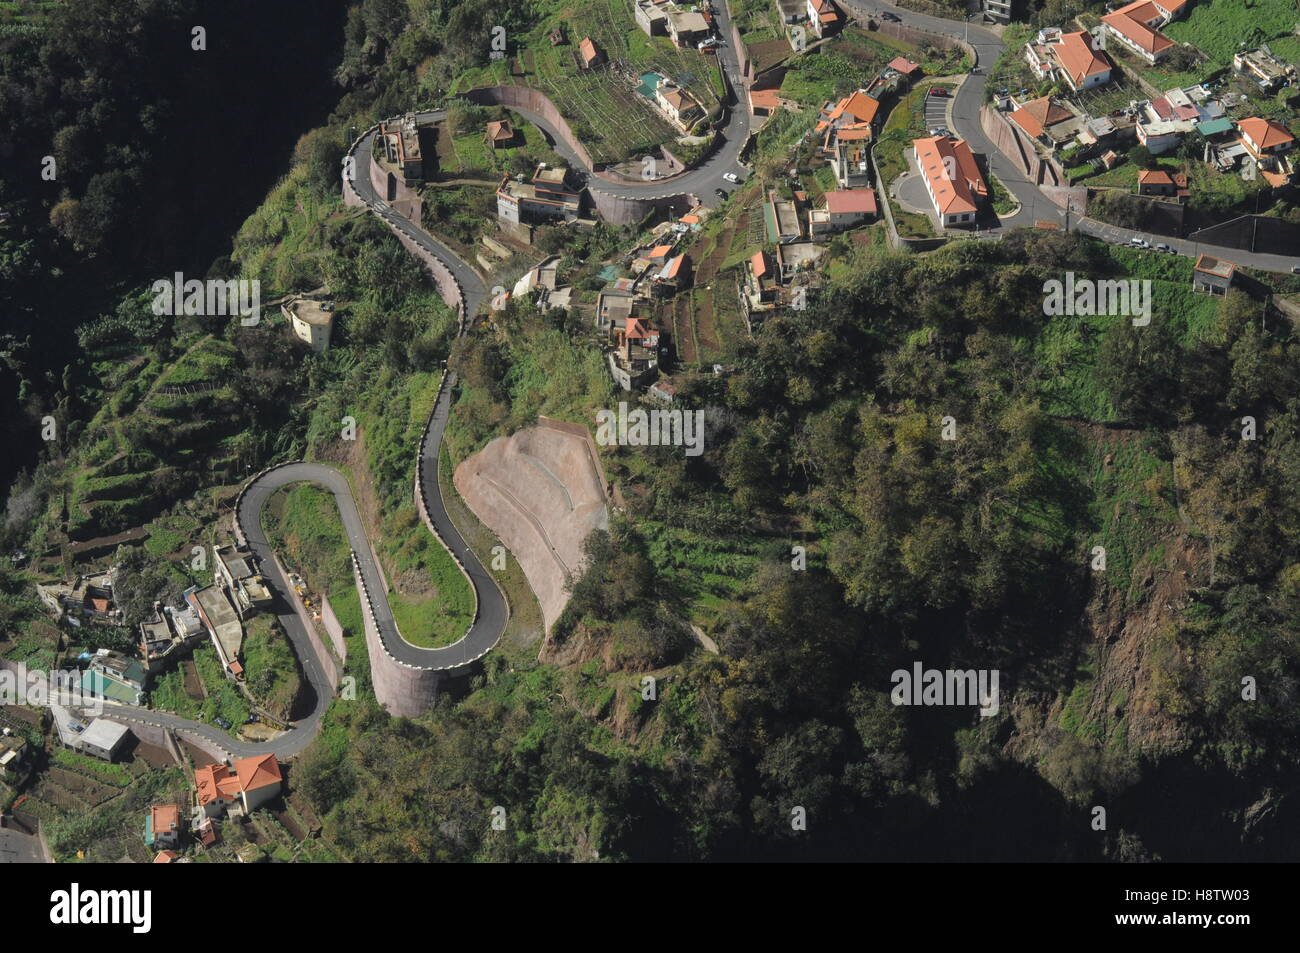 Hairpin bends of a winding mountain road near Curral das Freiras, Madeira Stock Photo